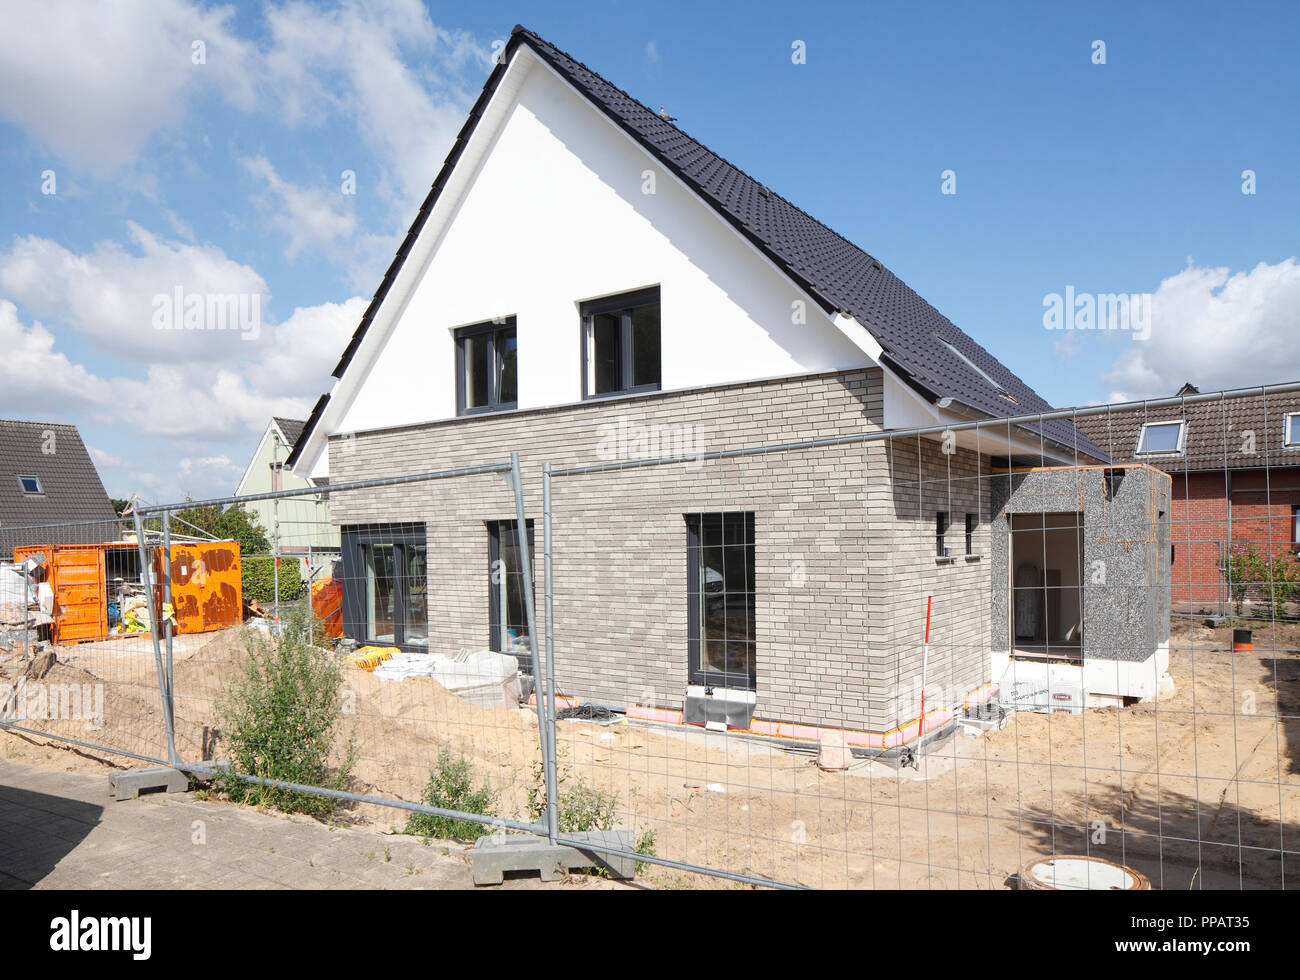 Maison individuelle, chantier de construction, shell, Achim, Basse-Saxe, Allemagne, Europe je Einfamilienhaus, Baustelle, Rohbau, Achim, Niedersach Banque D'Images